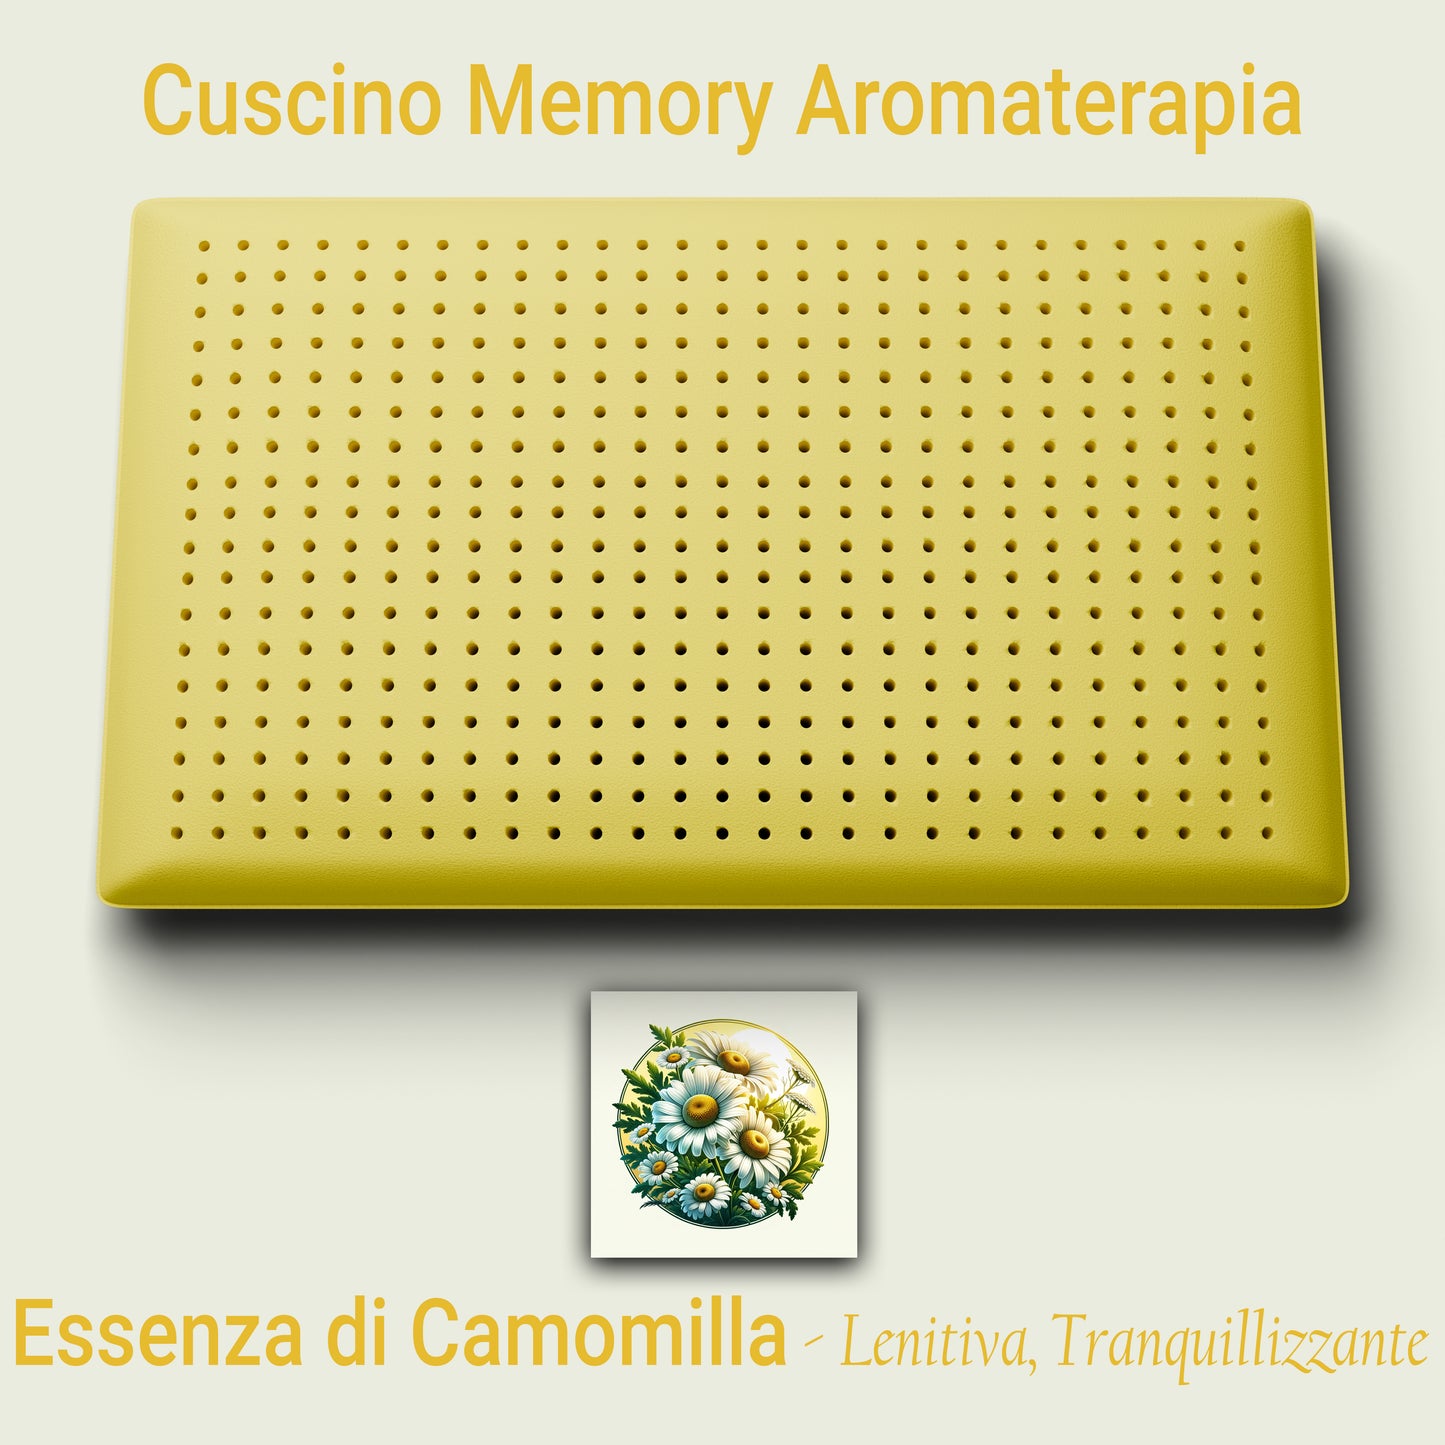 Cuscino Memory Aromaterapia, Cuscino per la Cervicale, Cuscino Profumo Camomilla